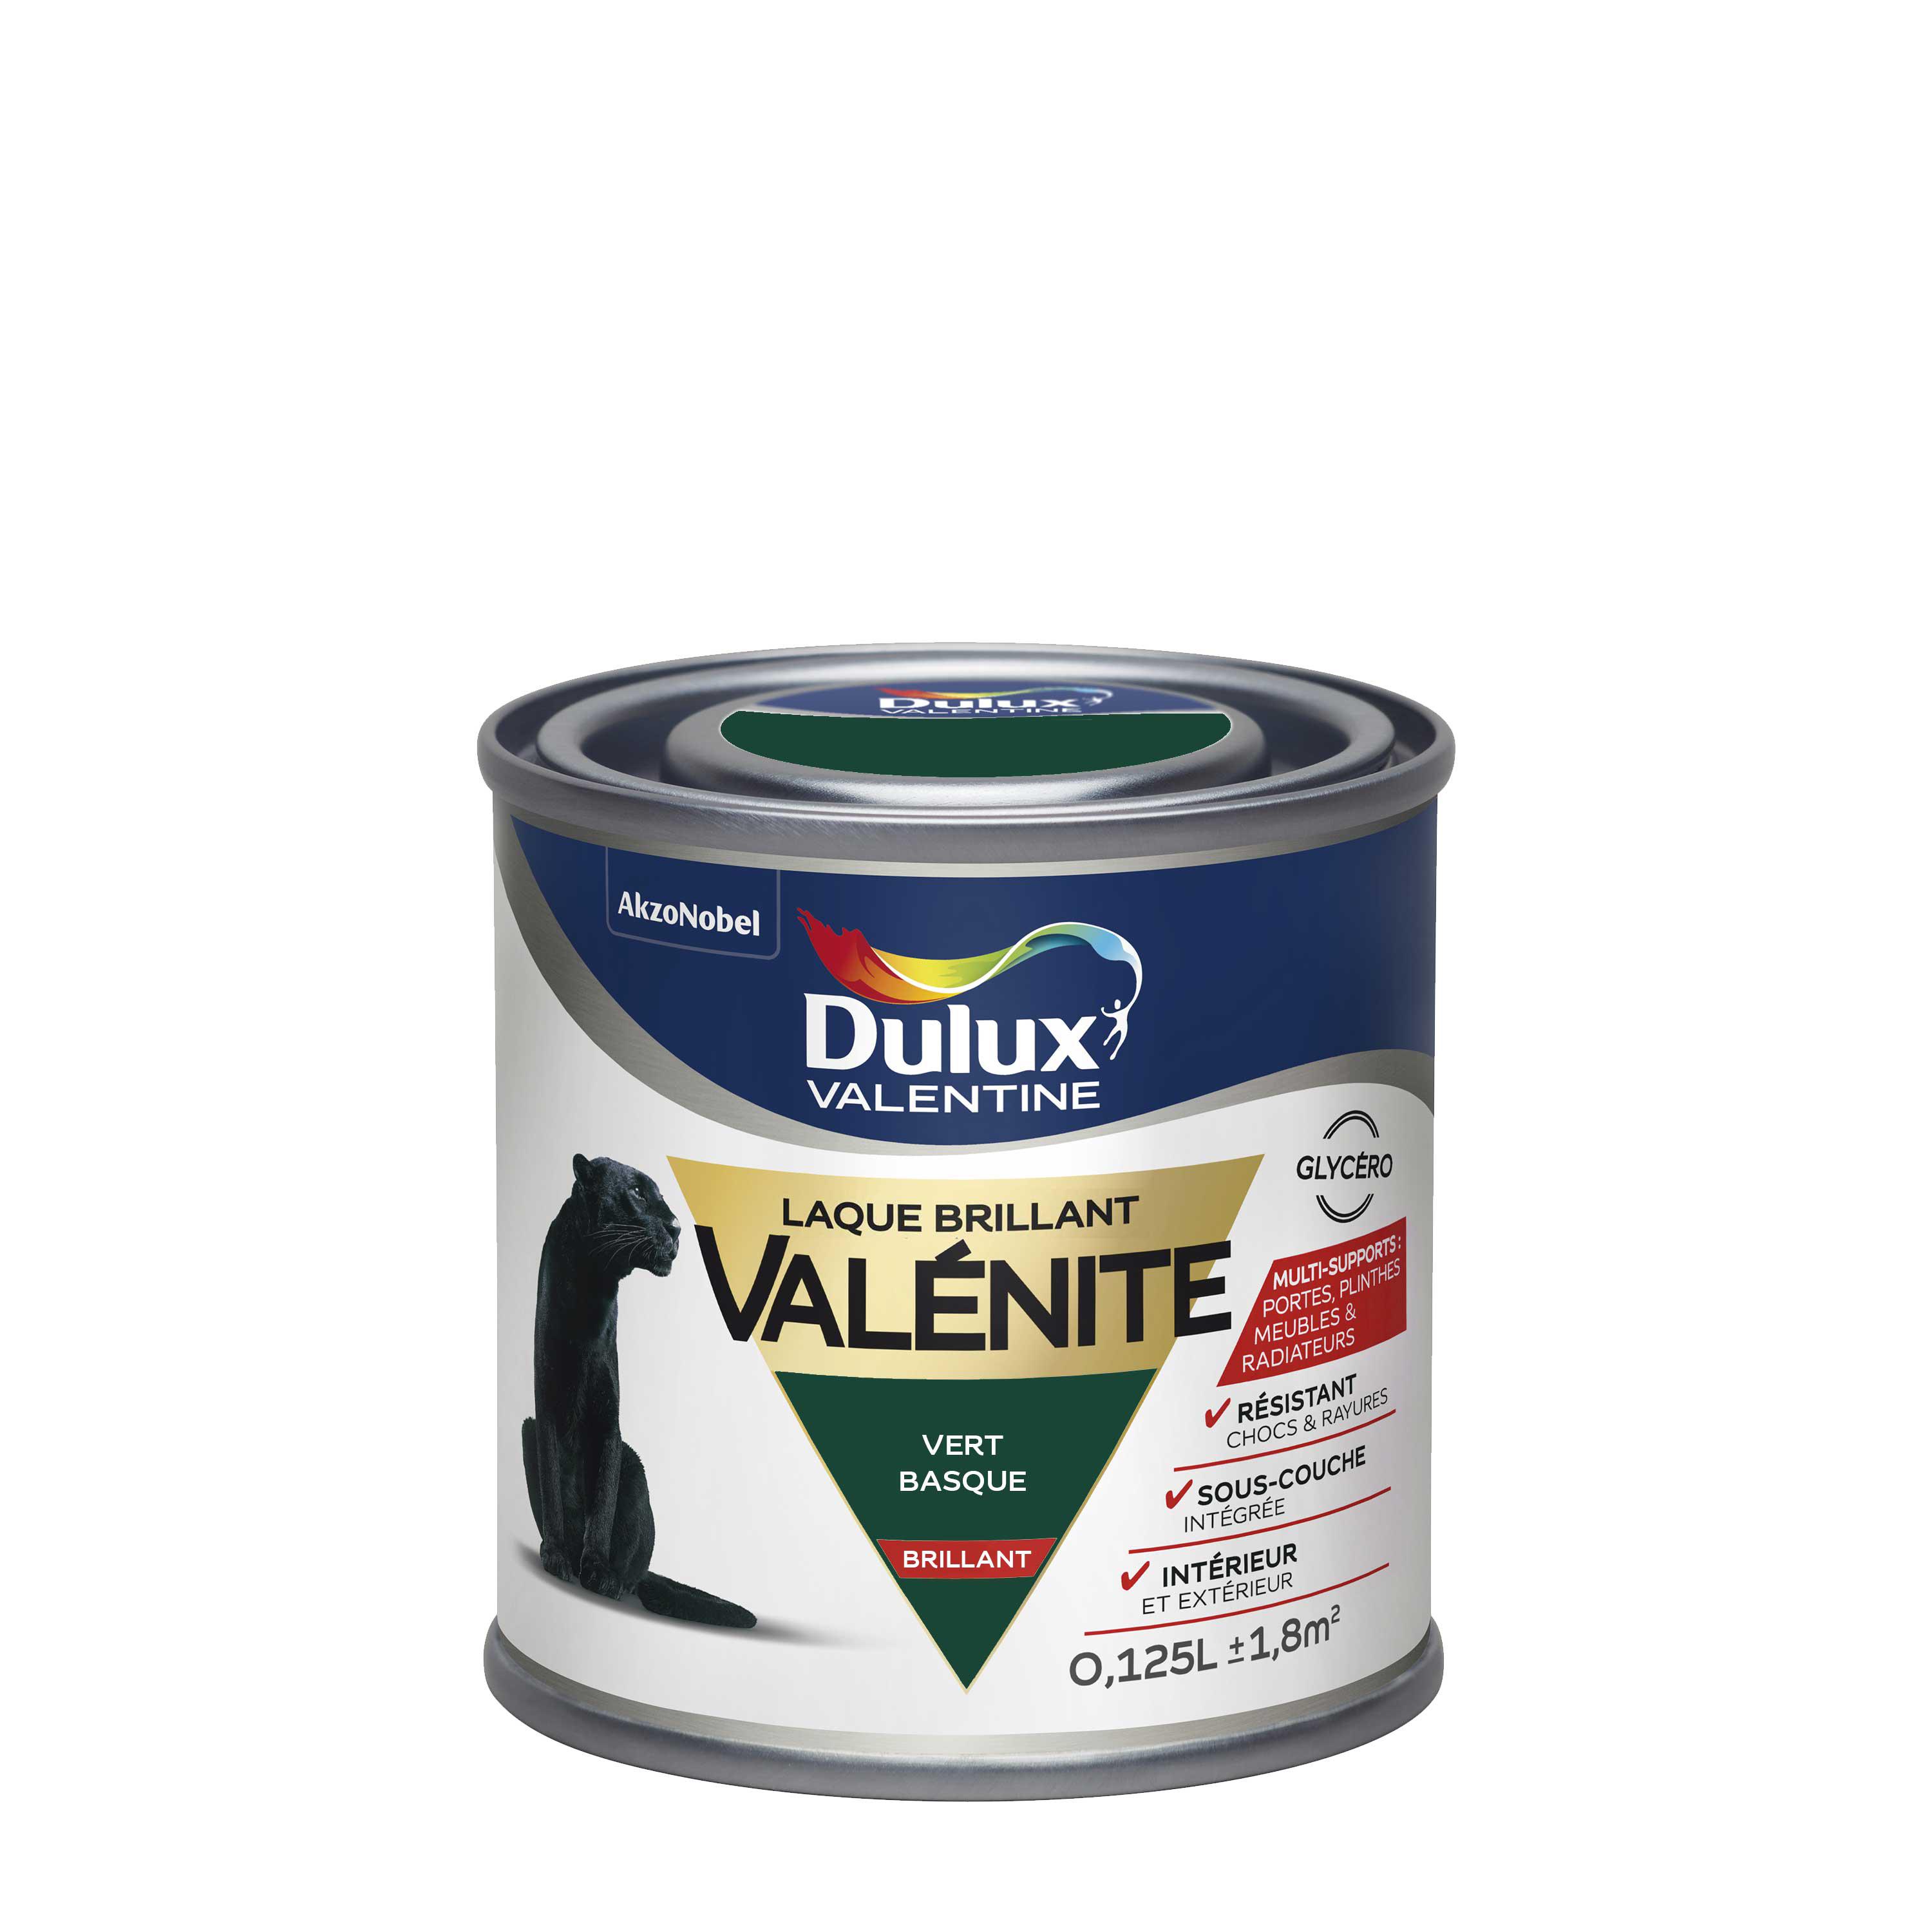 Peinture Laque Valénite Dulux Valentine Brillant Vert Basque 0,125 L